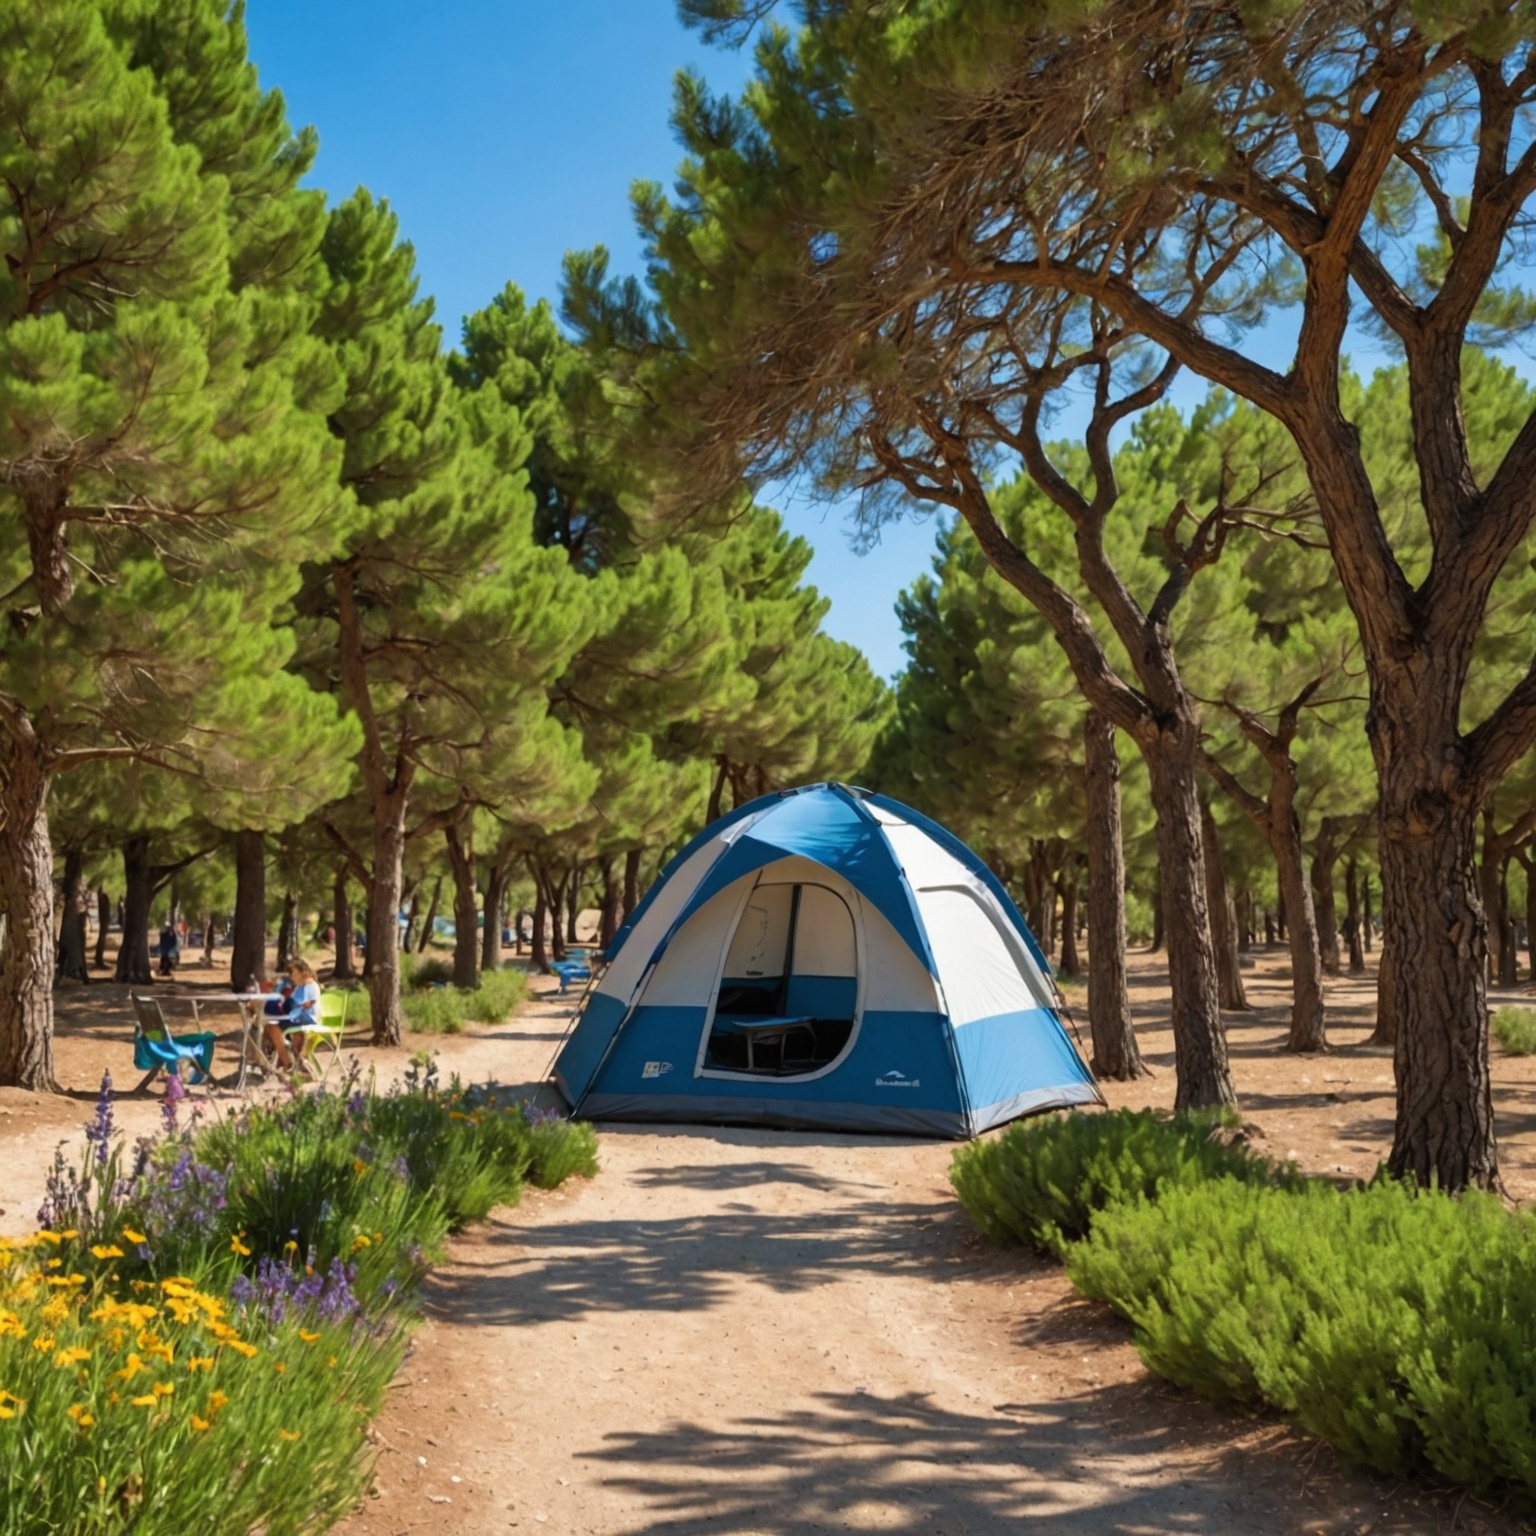 Découvrez les Meilleurs Campings Familiaux à Petit Prix en Provence-Alpes-Côte d’Azur